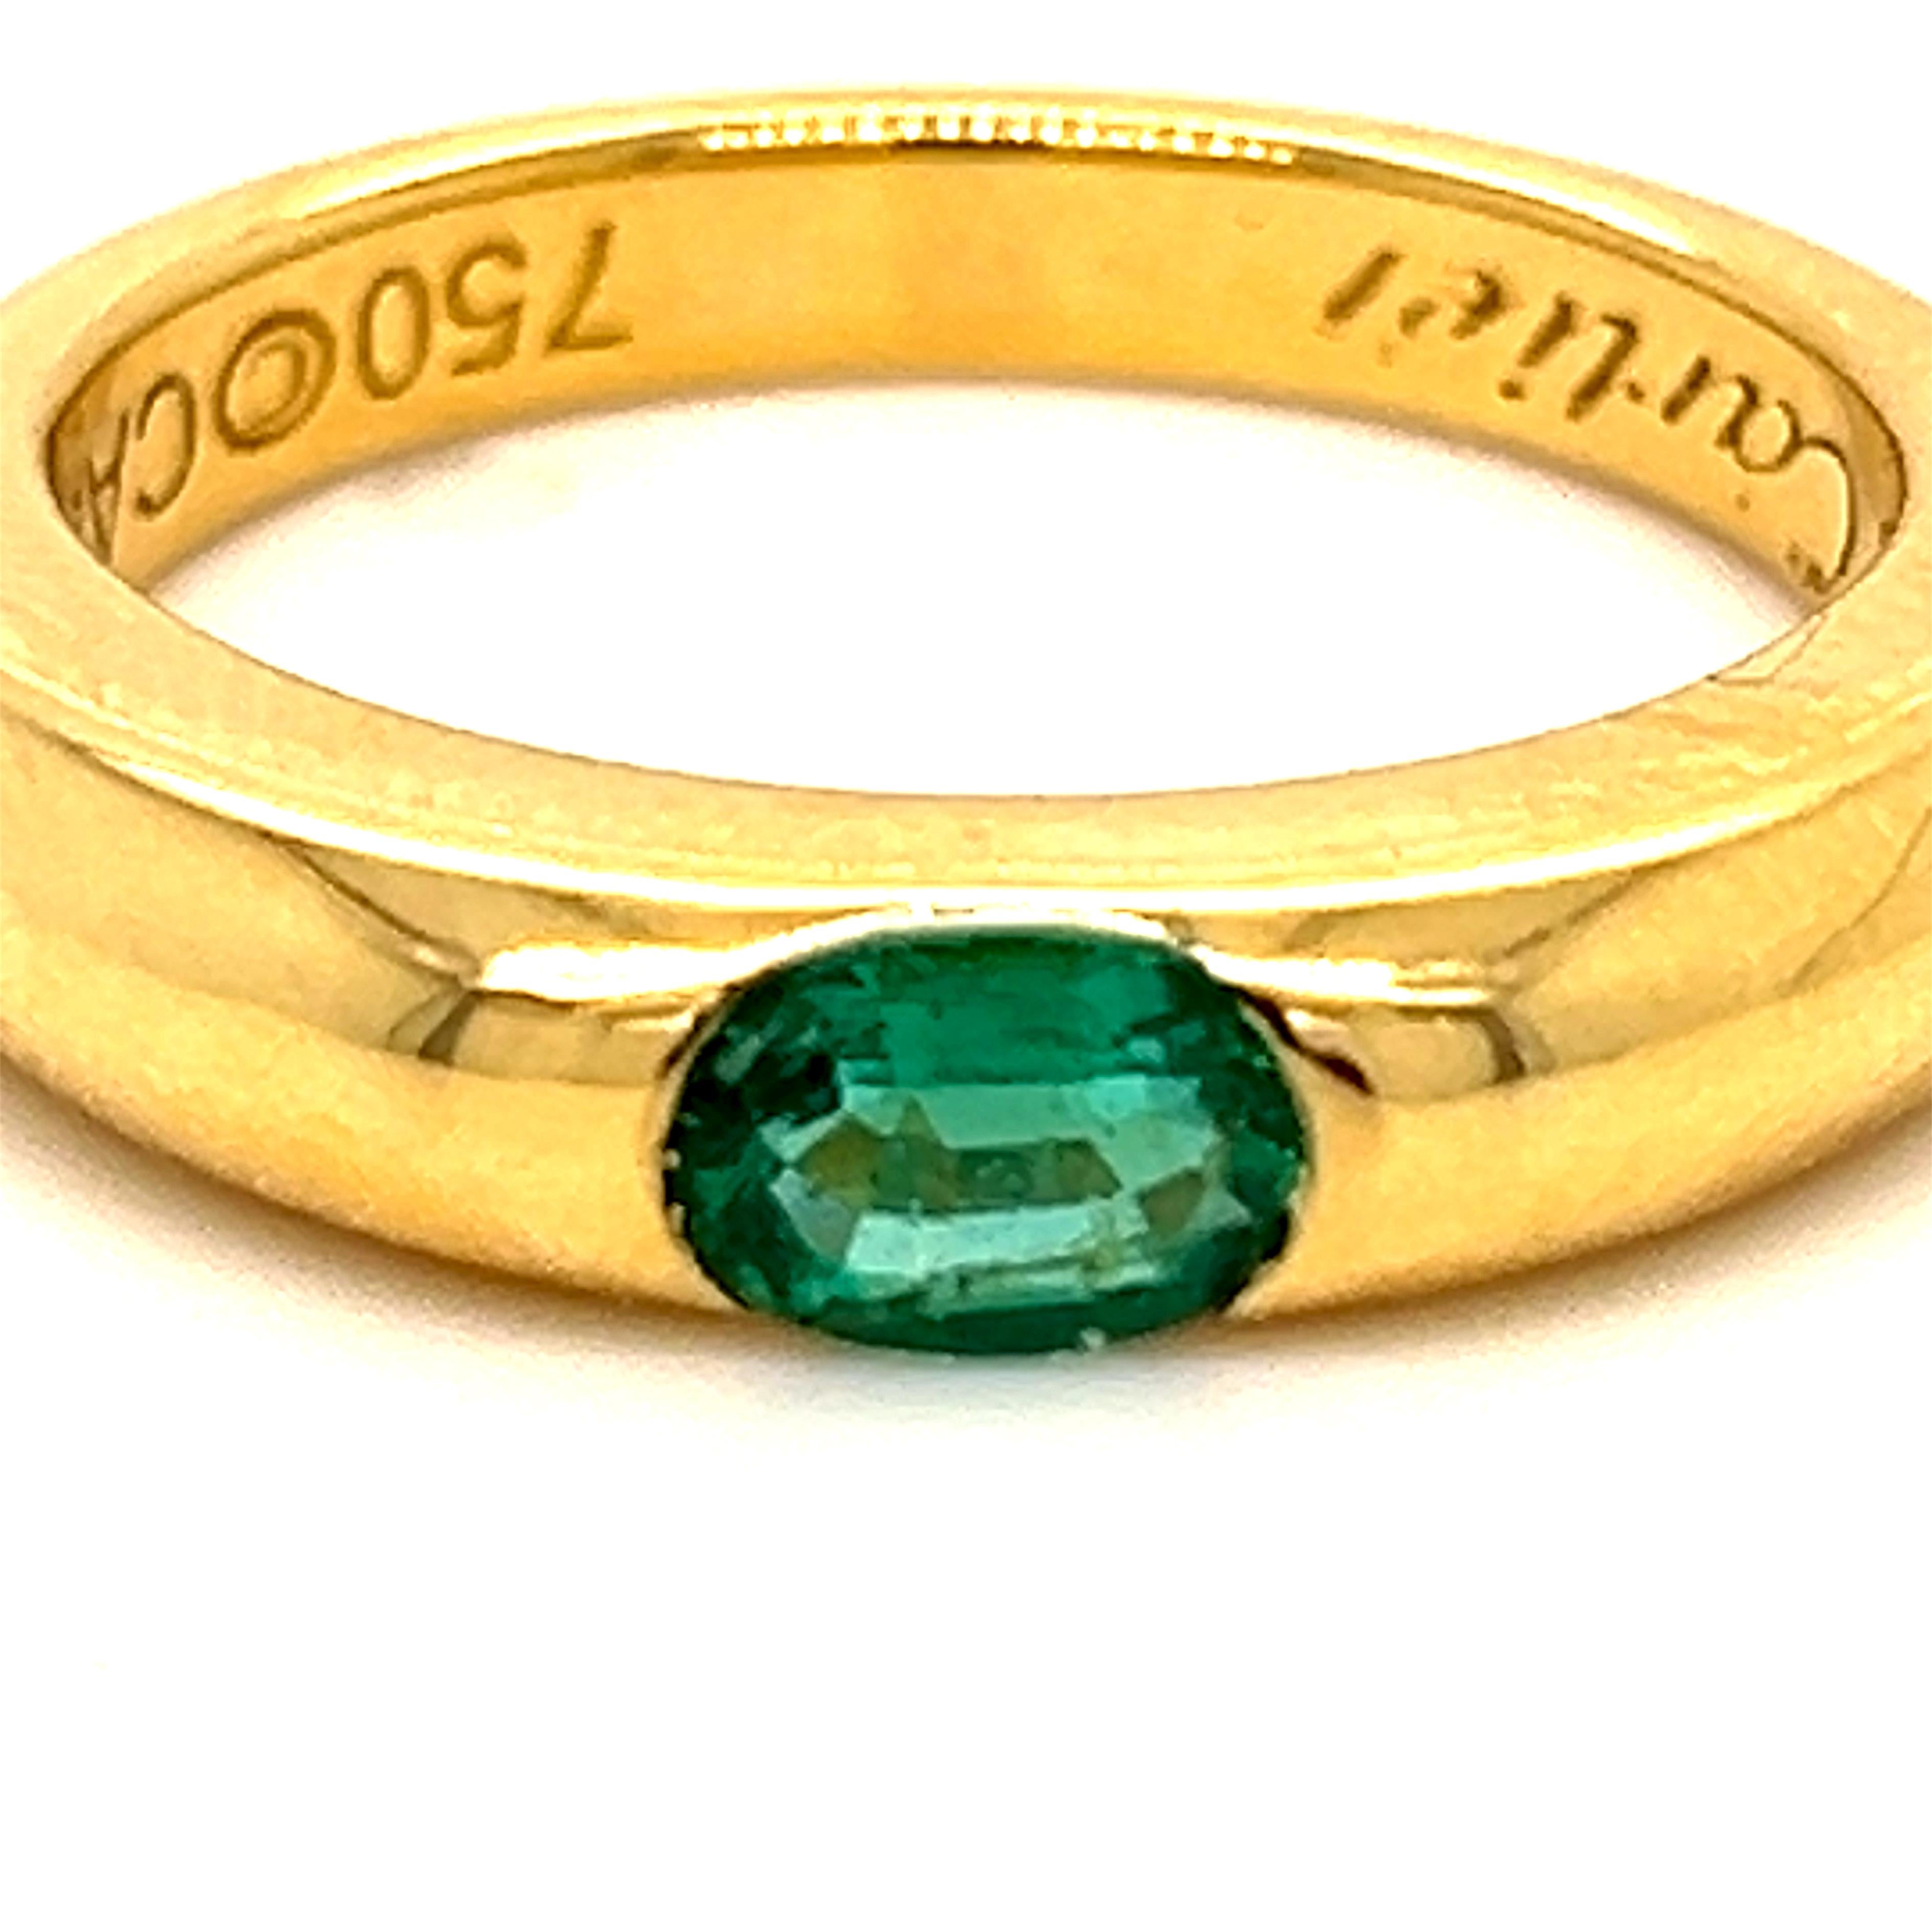 Original 1992, Cartier Oval  Natürlicher Smaragd 18Kt Gelbgold ikonische Ellipse Ring, Französisch Größe 54, Us Größe 6 3/4.
Eine sehr wertvolle Cartier etwa 0,50KT Top Qualität Oval natürlichen Smaragd in einem einfachen, alle Zeit tragbar 18kt